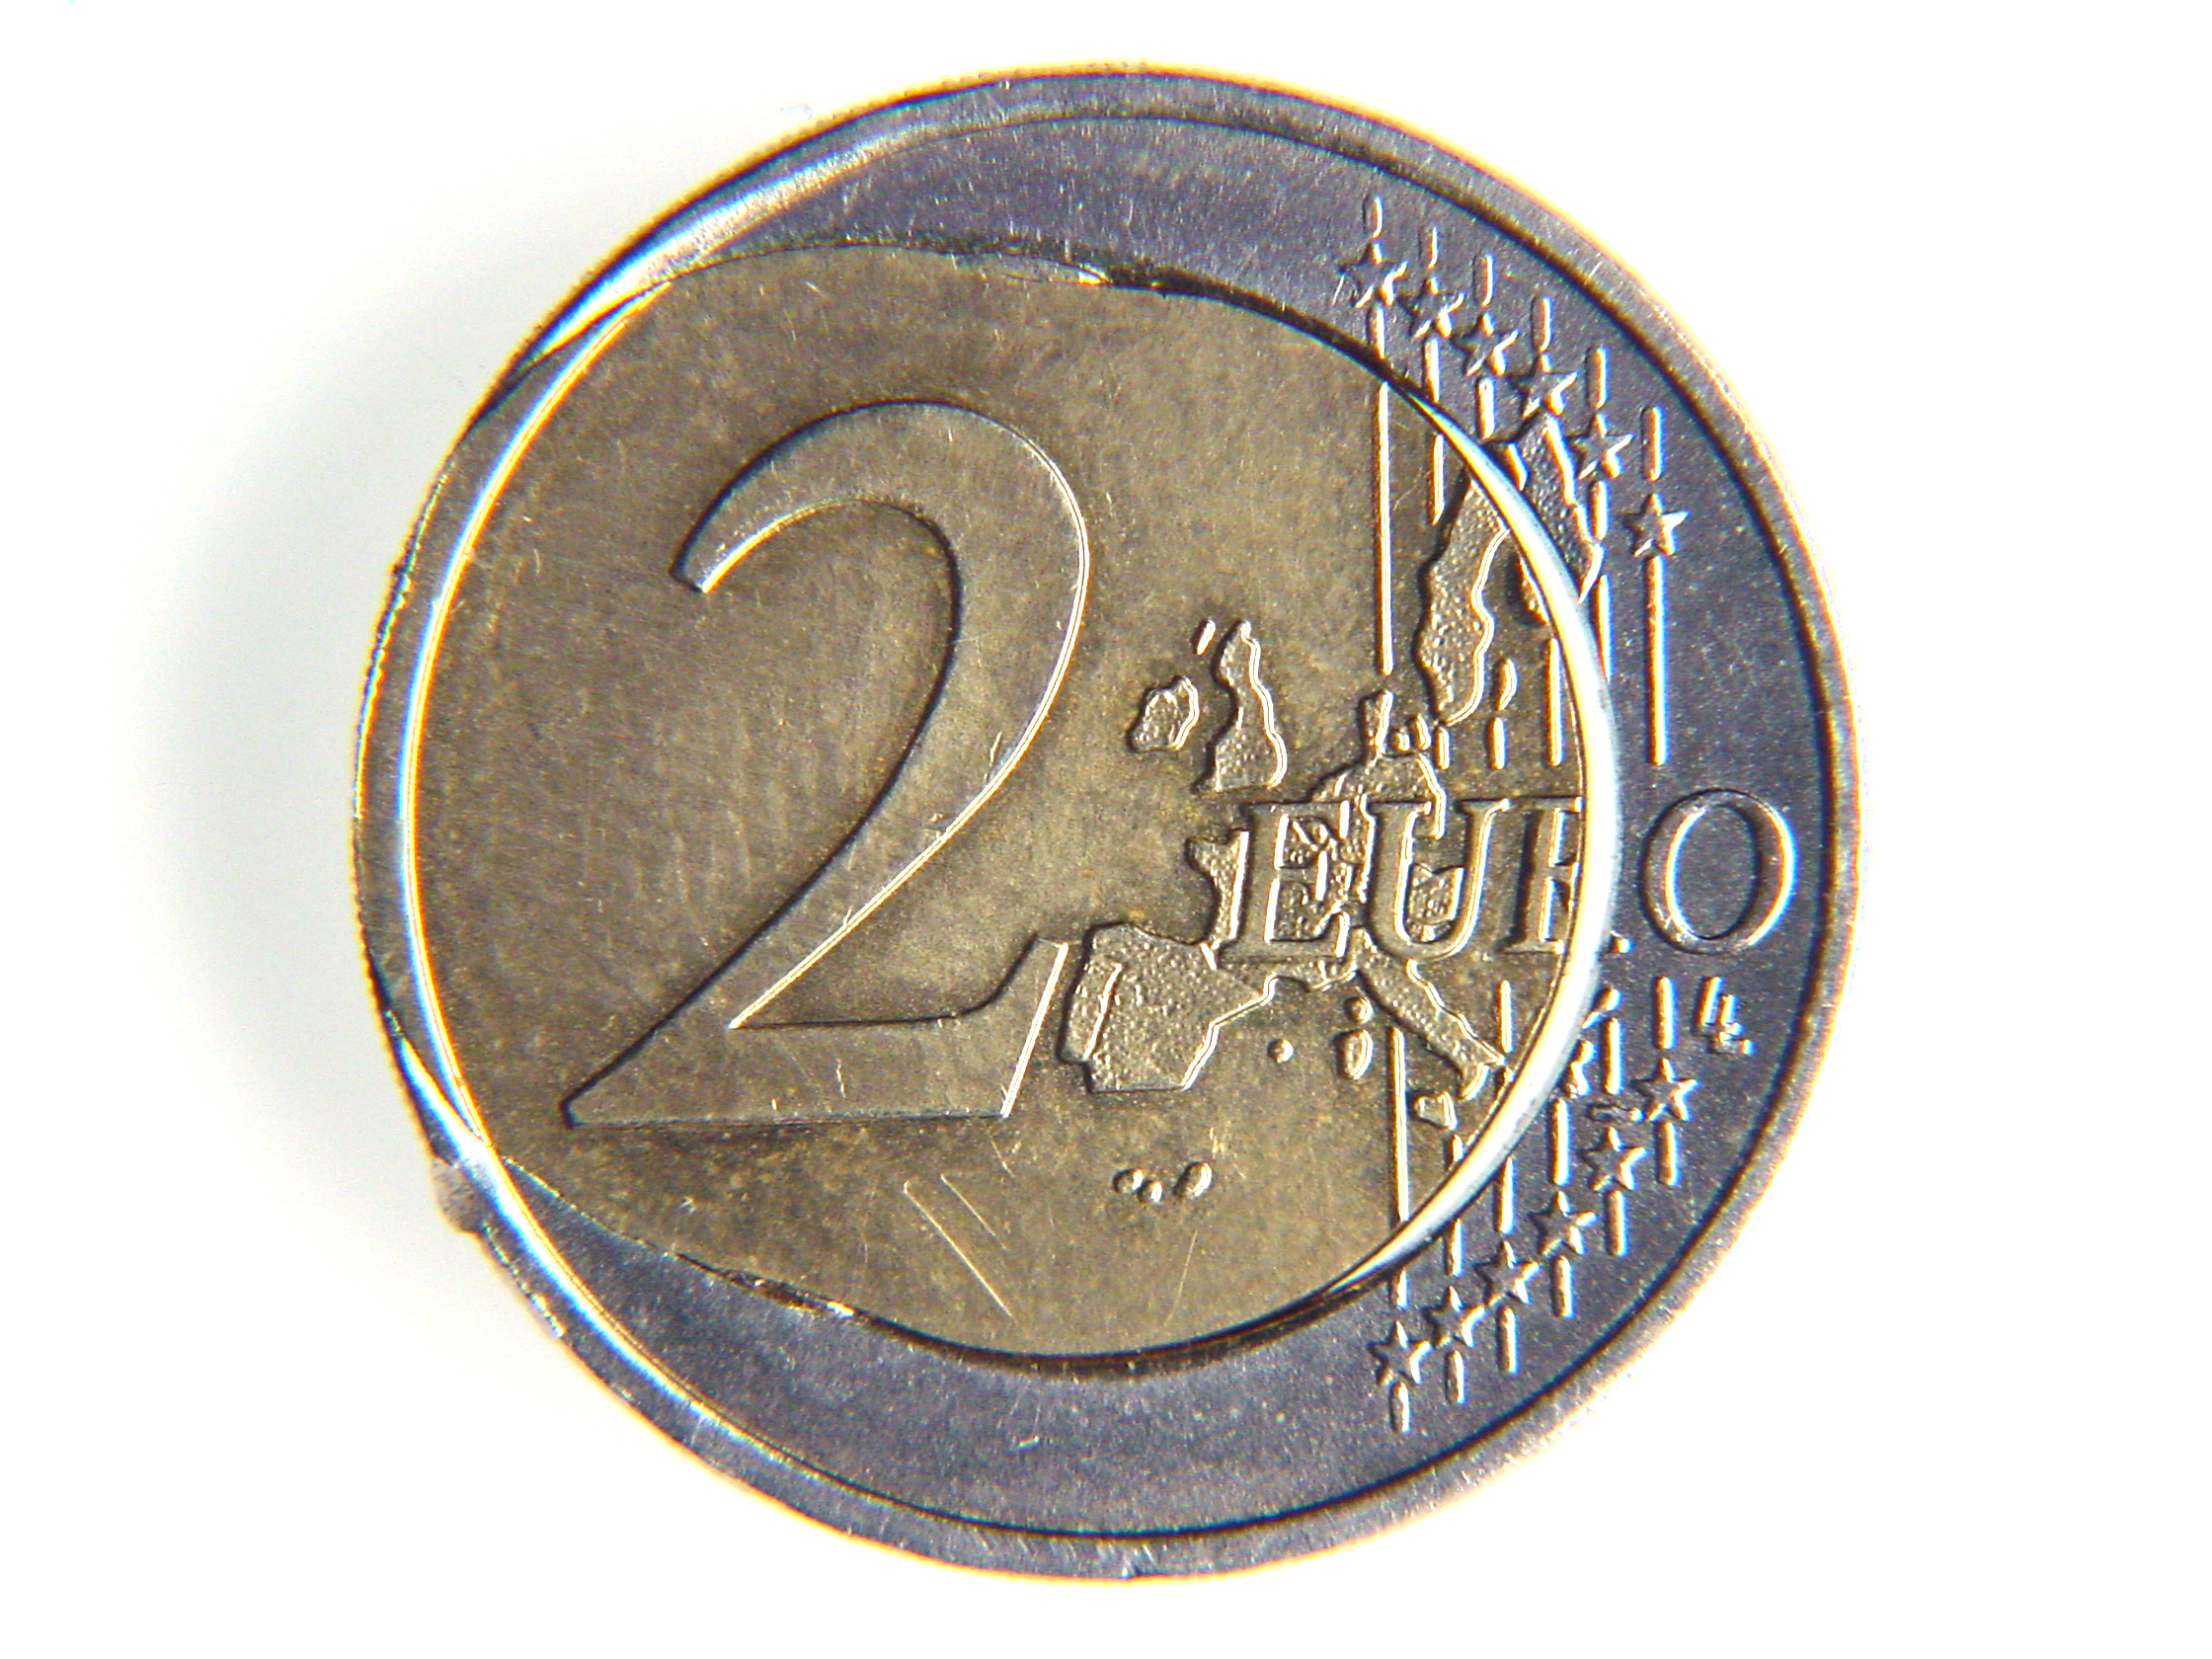 Spiegelei Euromünze, bei der das Innere über den äußeren Rand der 2-Euro-Münze läuft